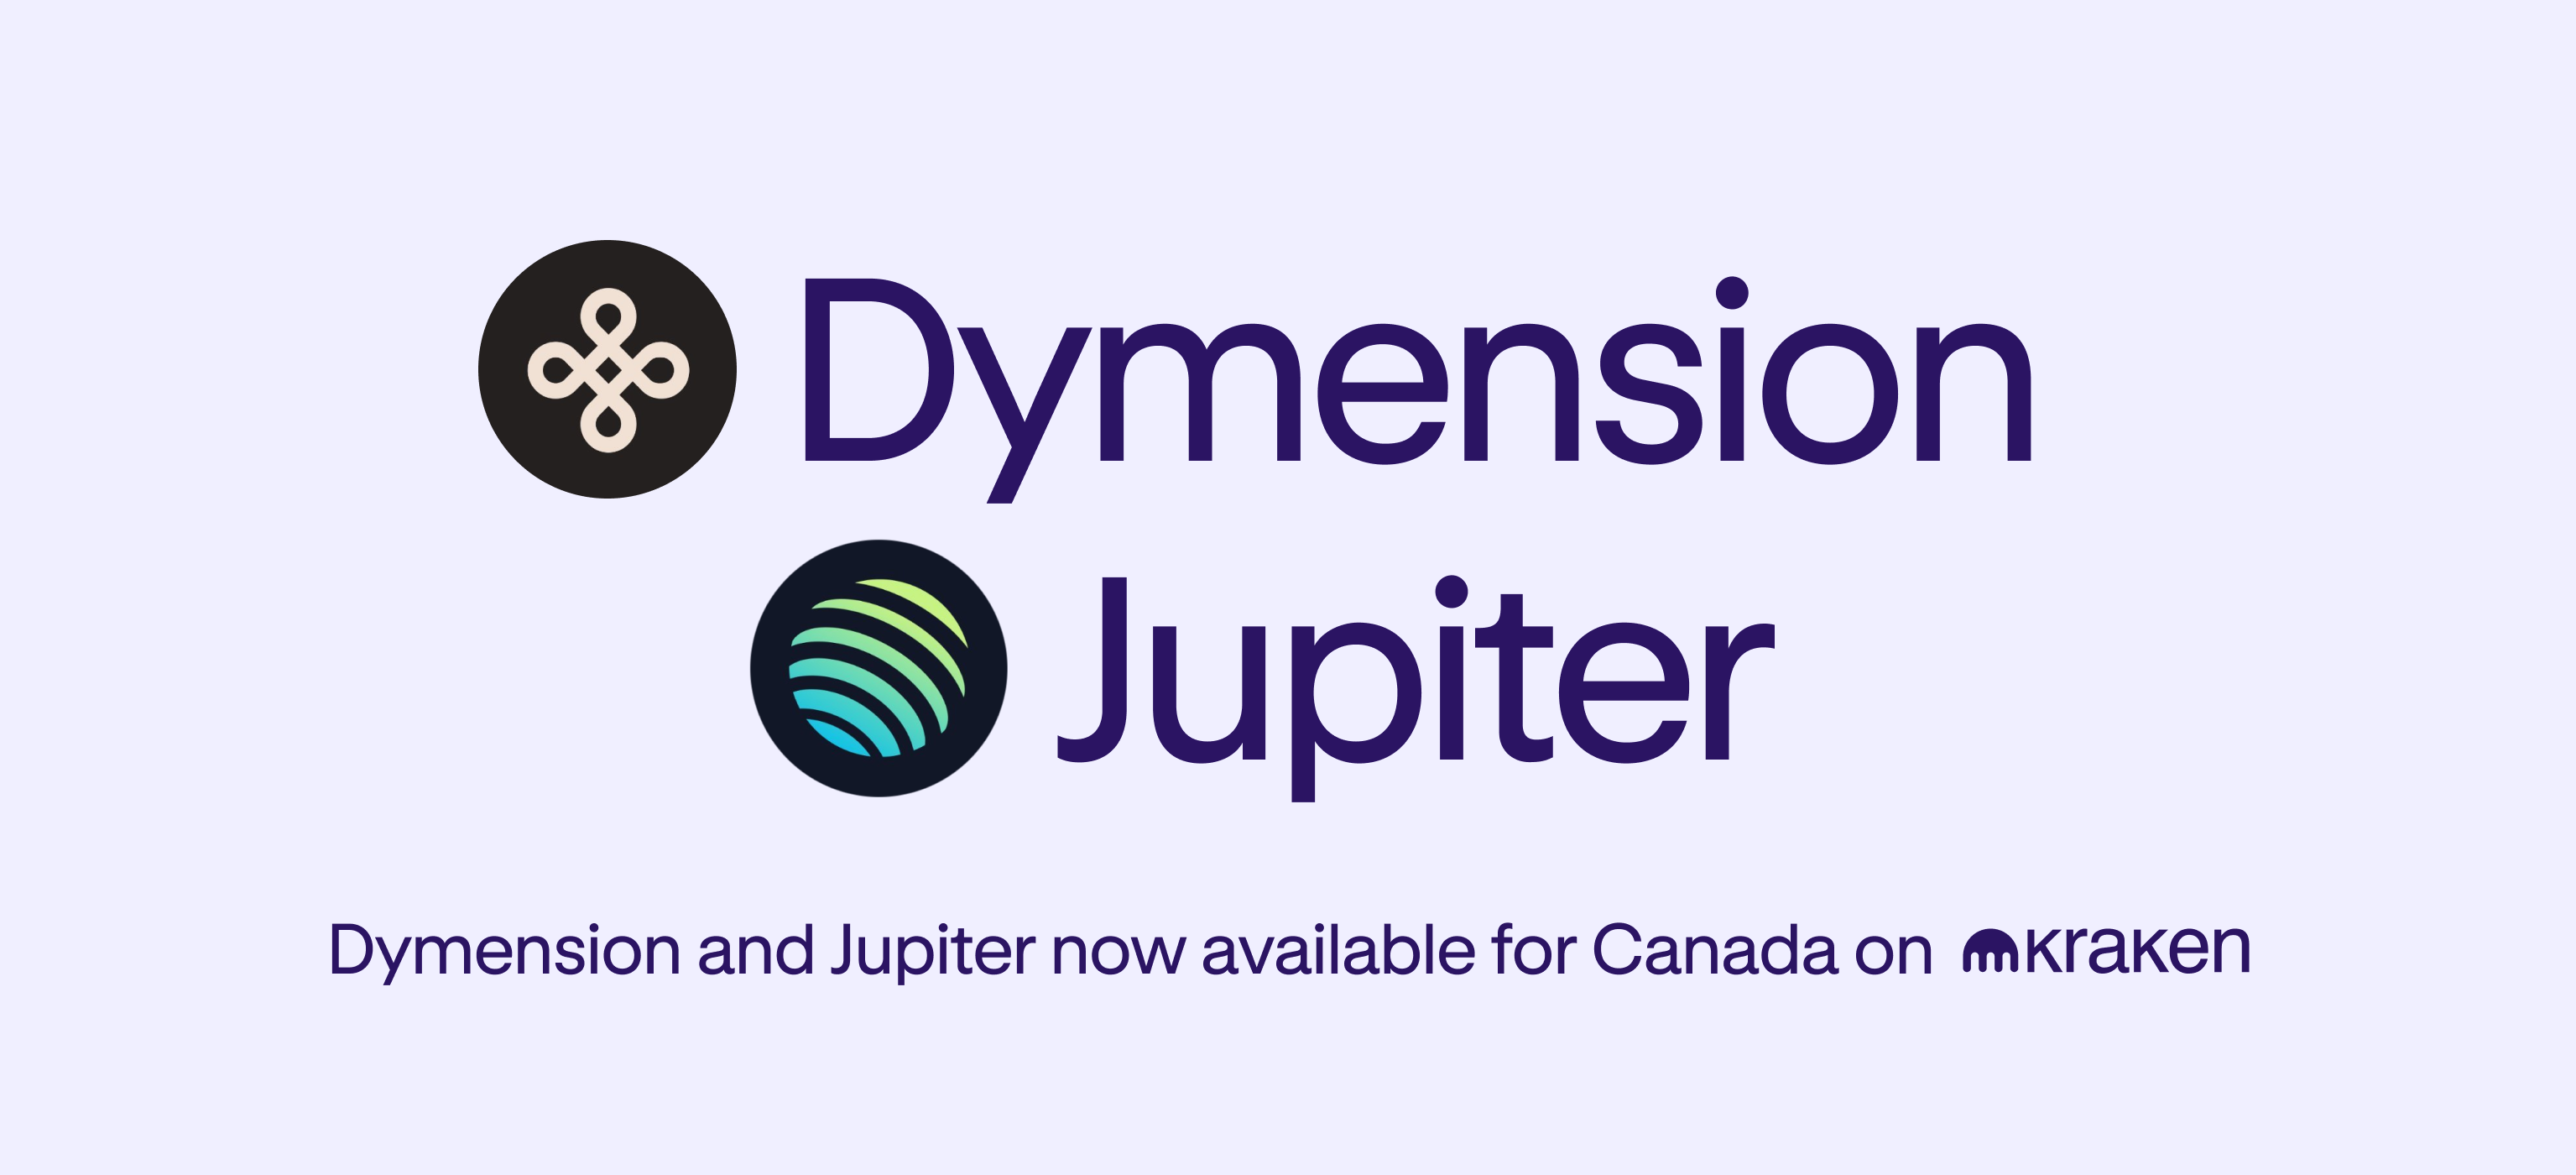 El comercio de Dymension (DYM) y Júpiter (JUP) comienza ahora en Canadá